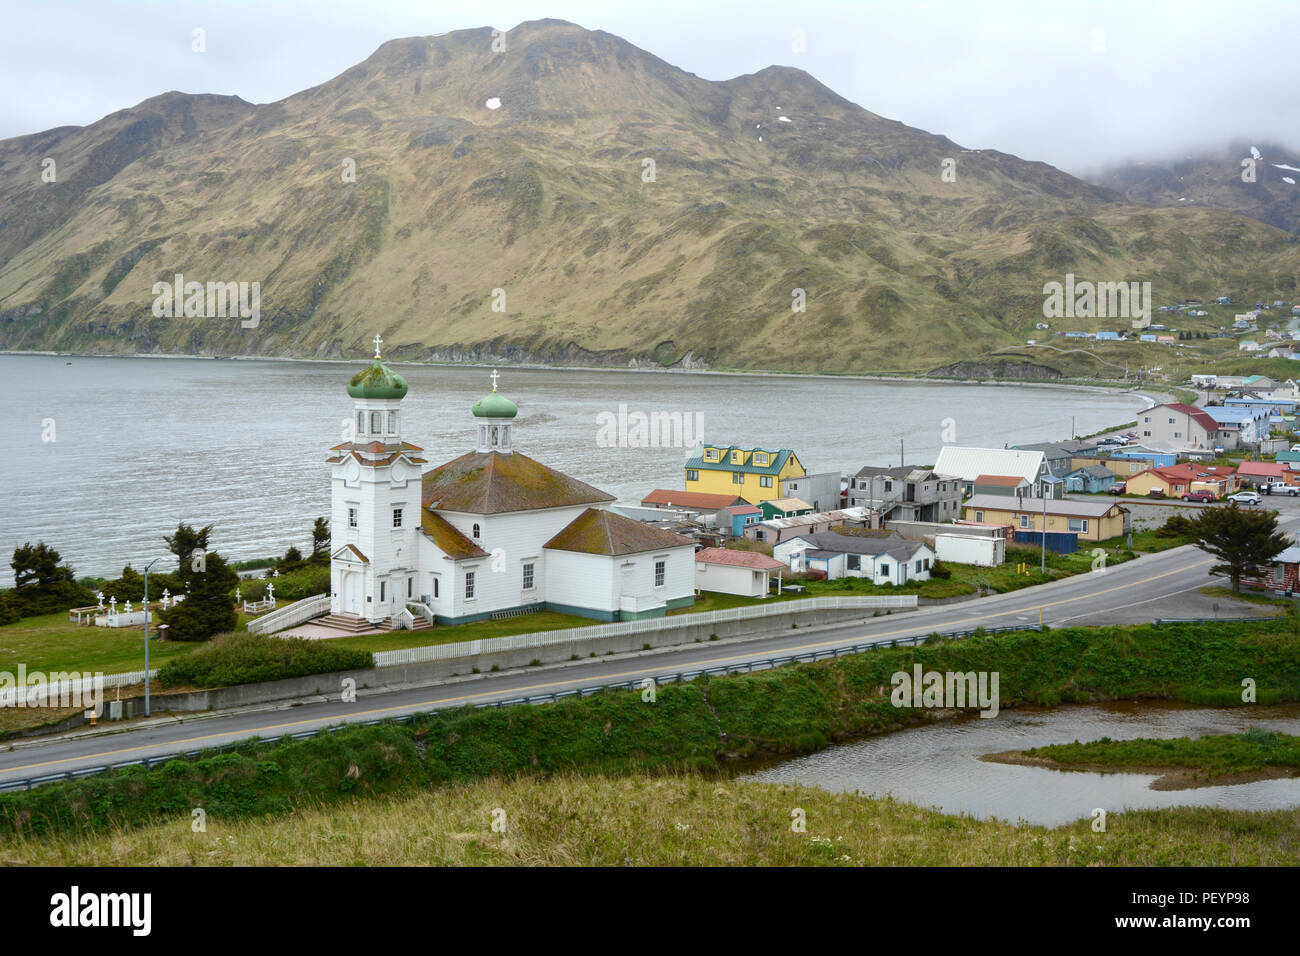 Die Kirche des Heiligen Himmelfahrt, einem Gebäude aus dem 19. Jahrhundert Orthodoxe Kirche in der Stadt Unalaska, Unalaska Island, Alaska, Aleuten Archipel. Stockfoto